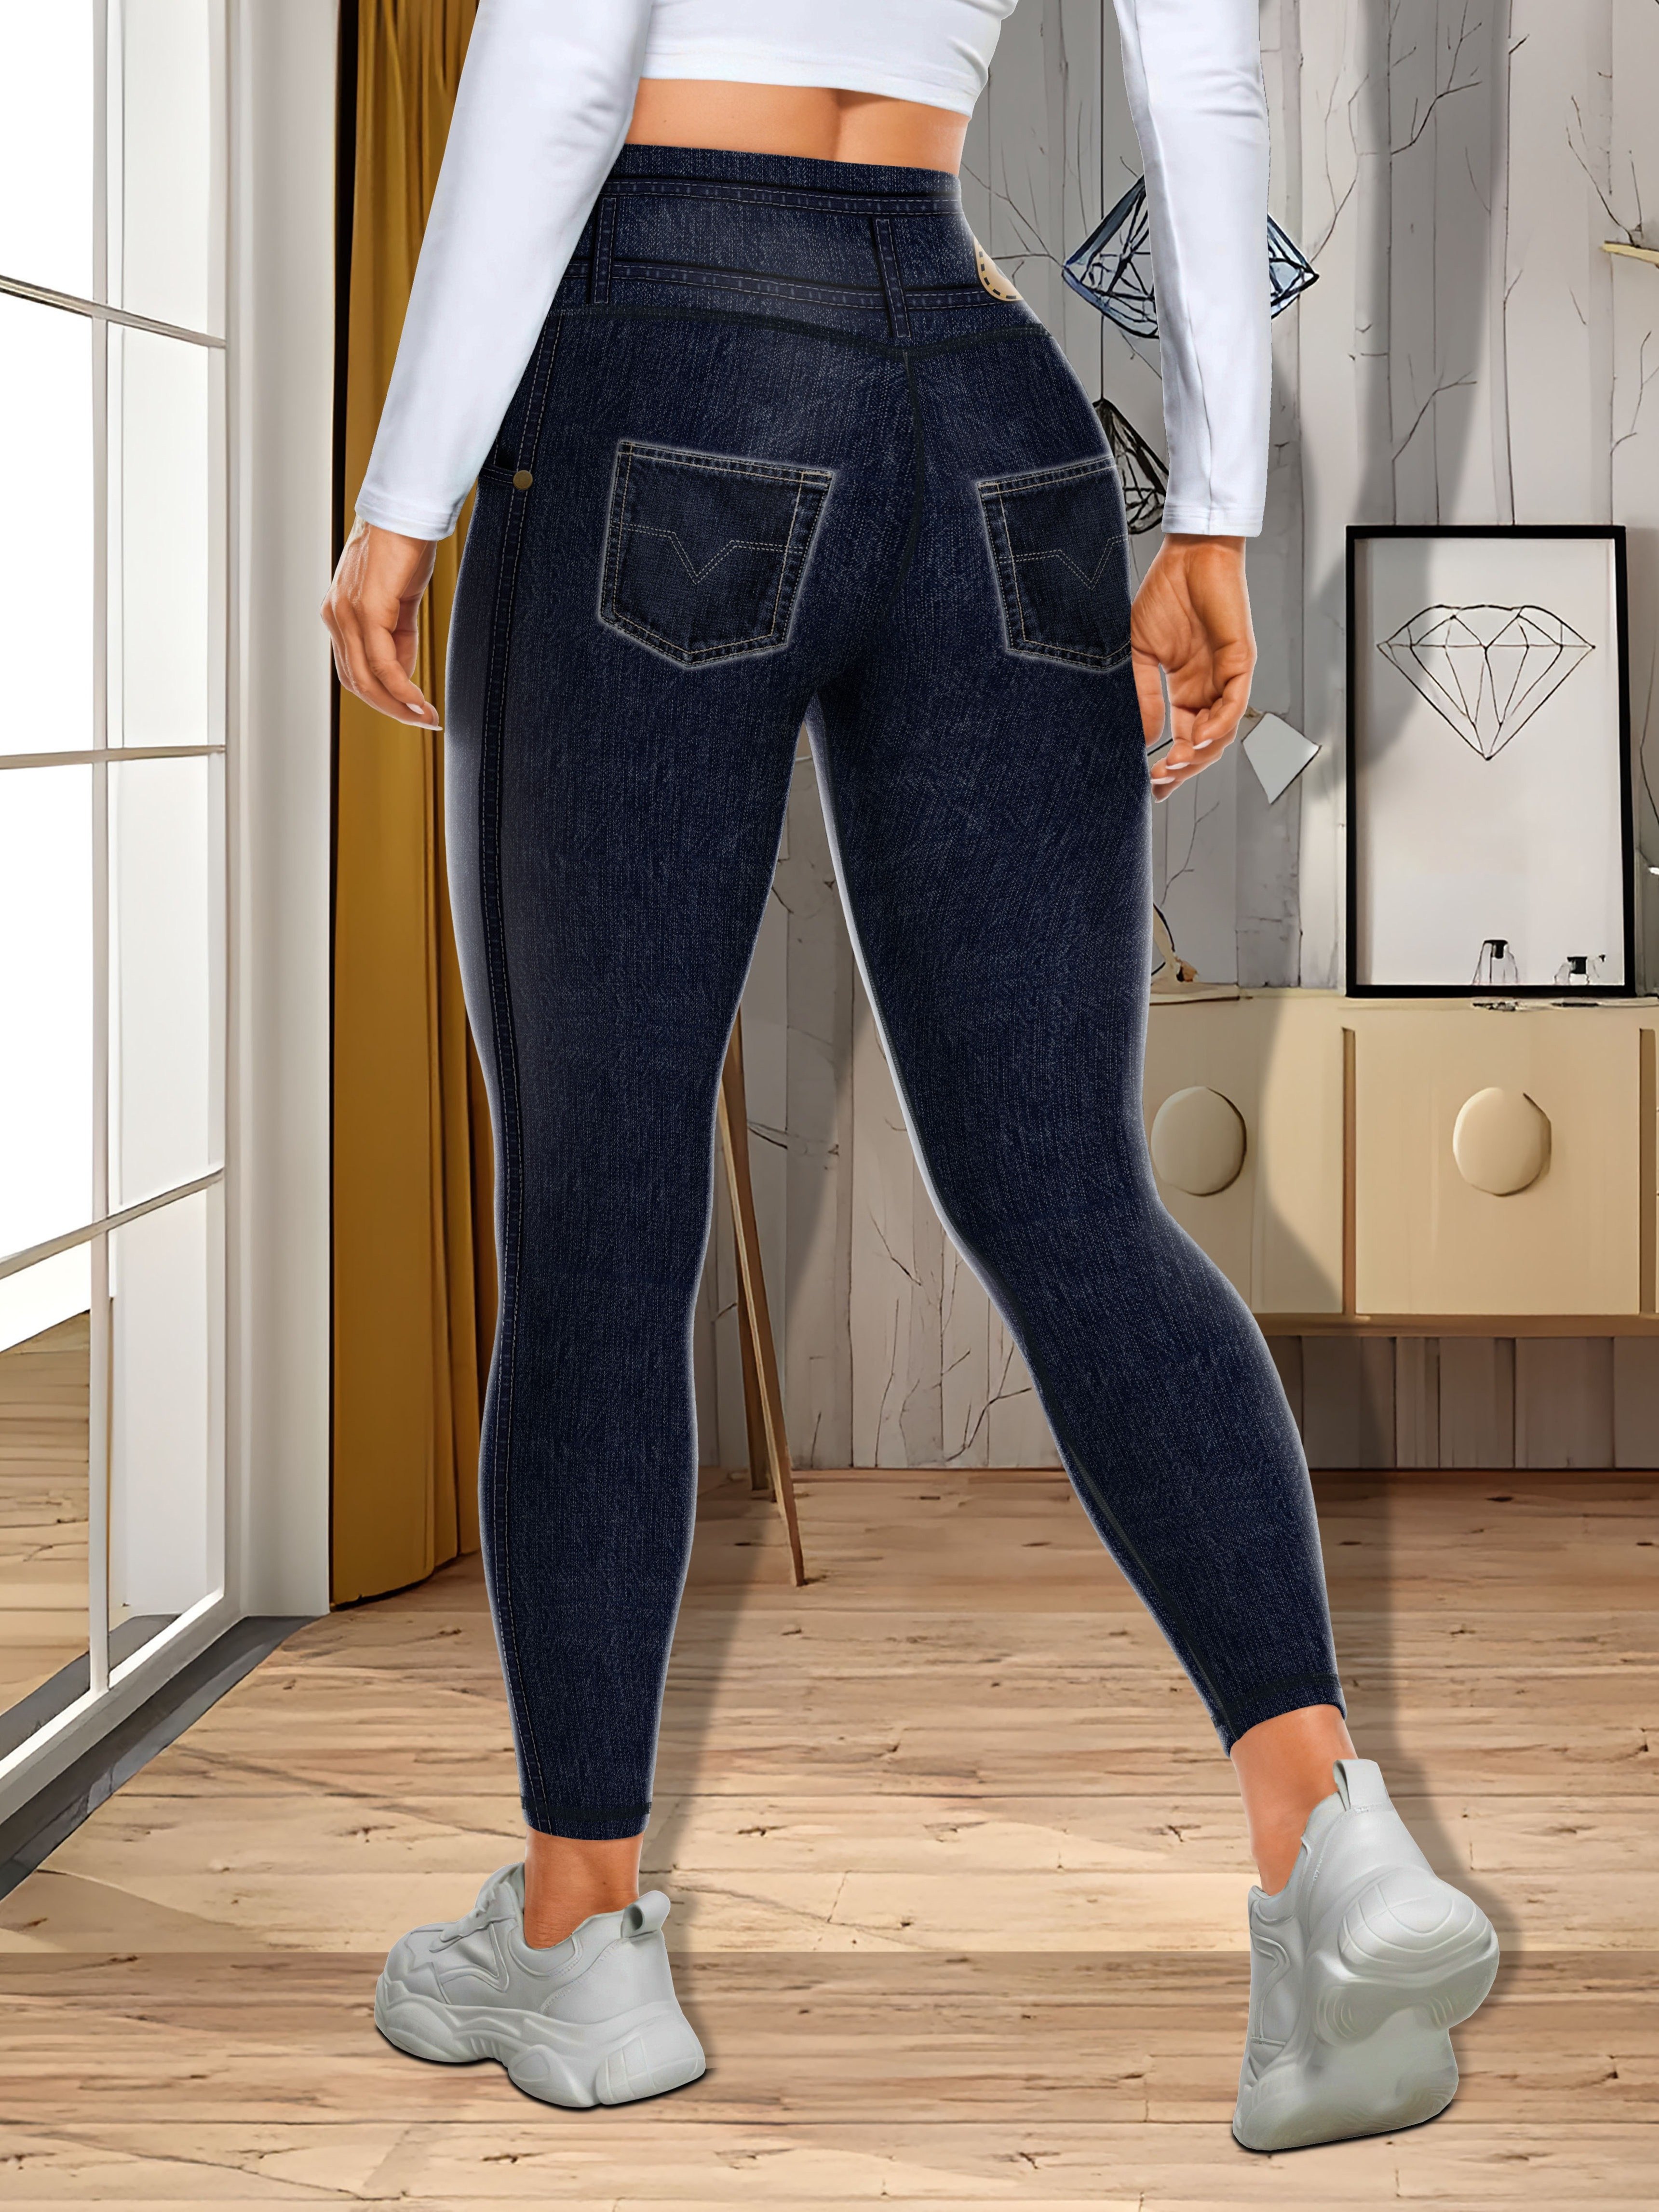 Leggings Jeans for Women Denim Pants with Pocket Slim Jeggings Fitness Plus  Size Leggings S-XXL Black/Gray/Blue